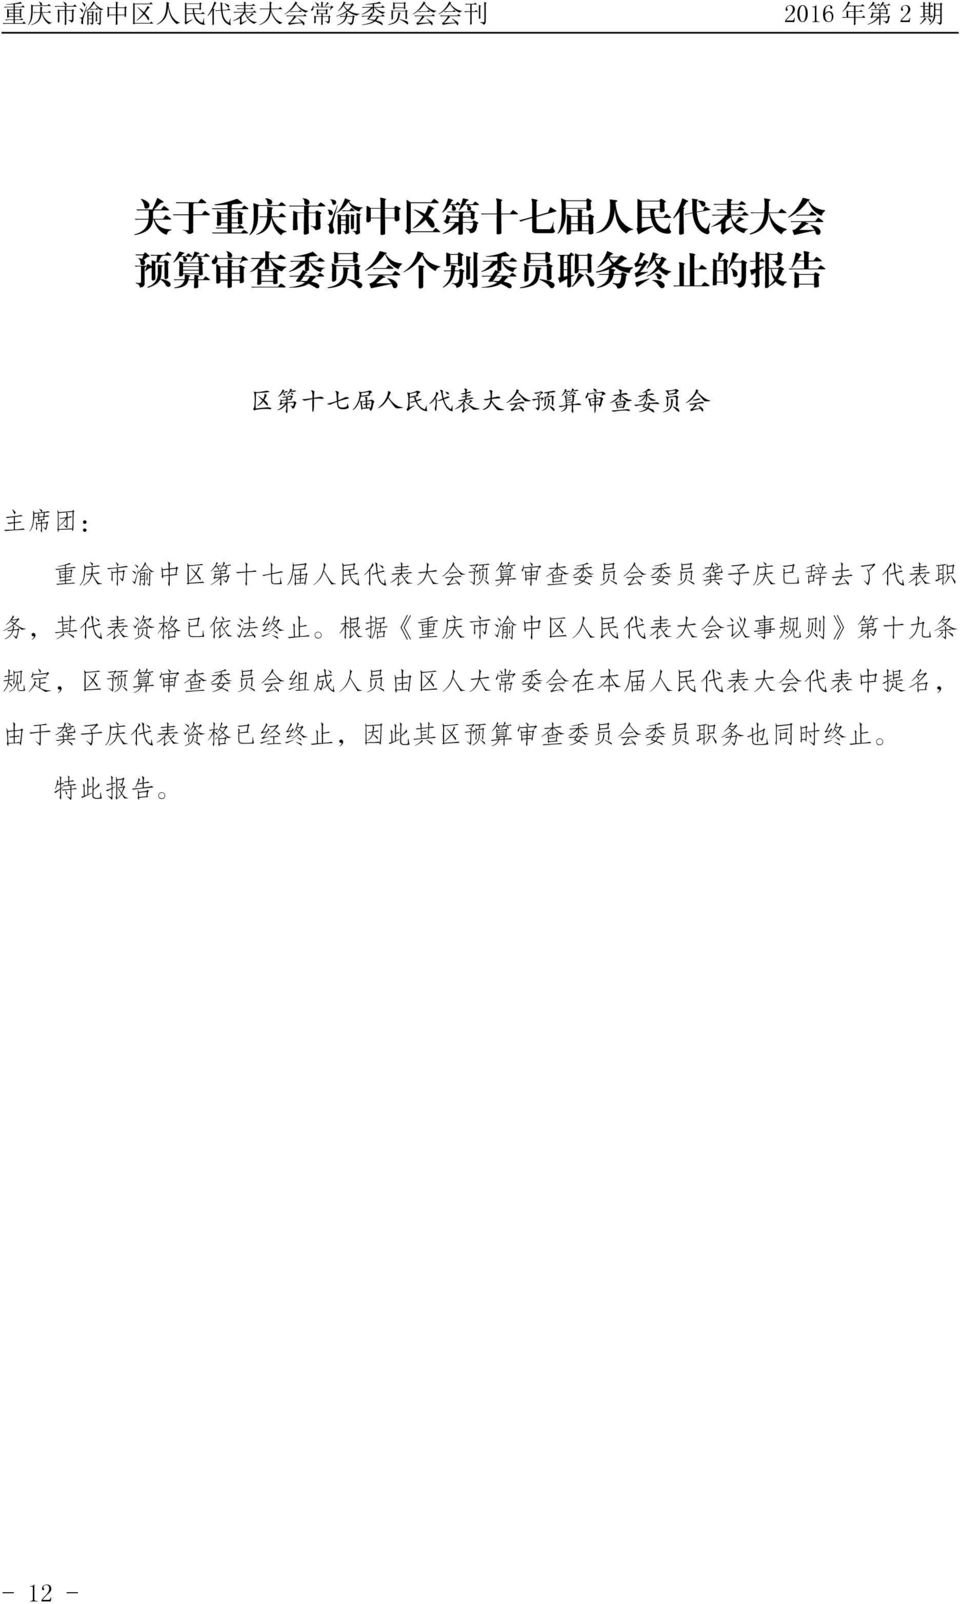 法 终 止 根 据 重 庆 市 渝 中 区 人 民 代 表 大 会 议 事 规 则 第 十 九 条 规 定, 区 预 算 审 查 委 员 会 组 成 人 员 由 区 人 大 常 委 会 在 本 届 人